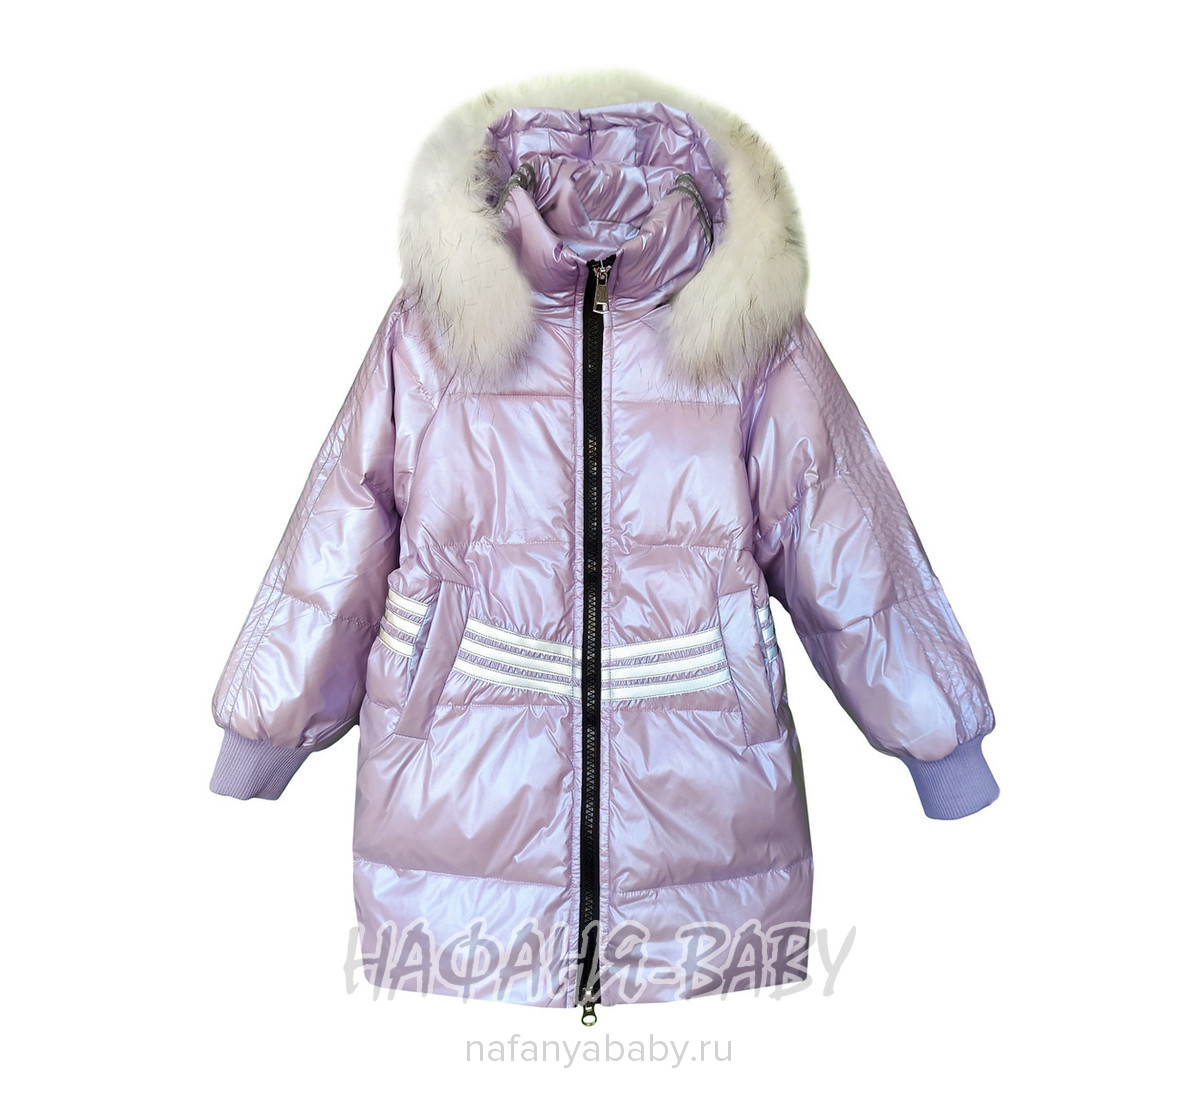 Зимнее пальто для девочки MAY JM, купить в интернет магазине Нафаня. арт: 9226.